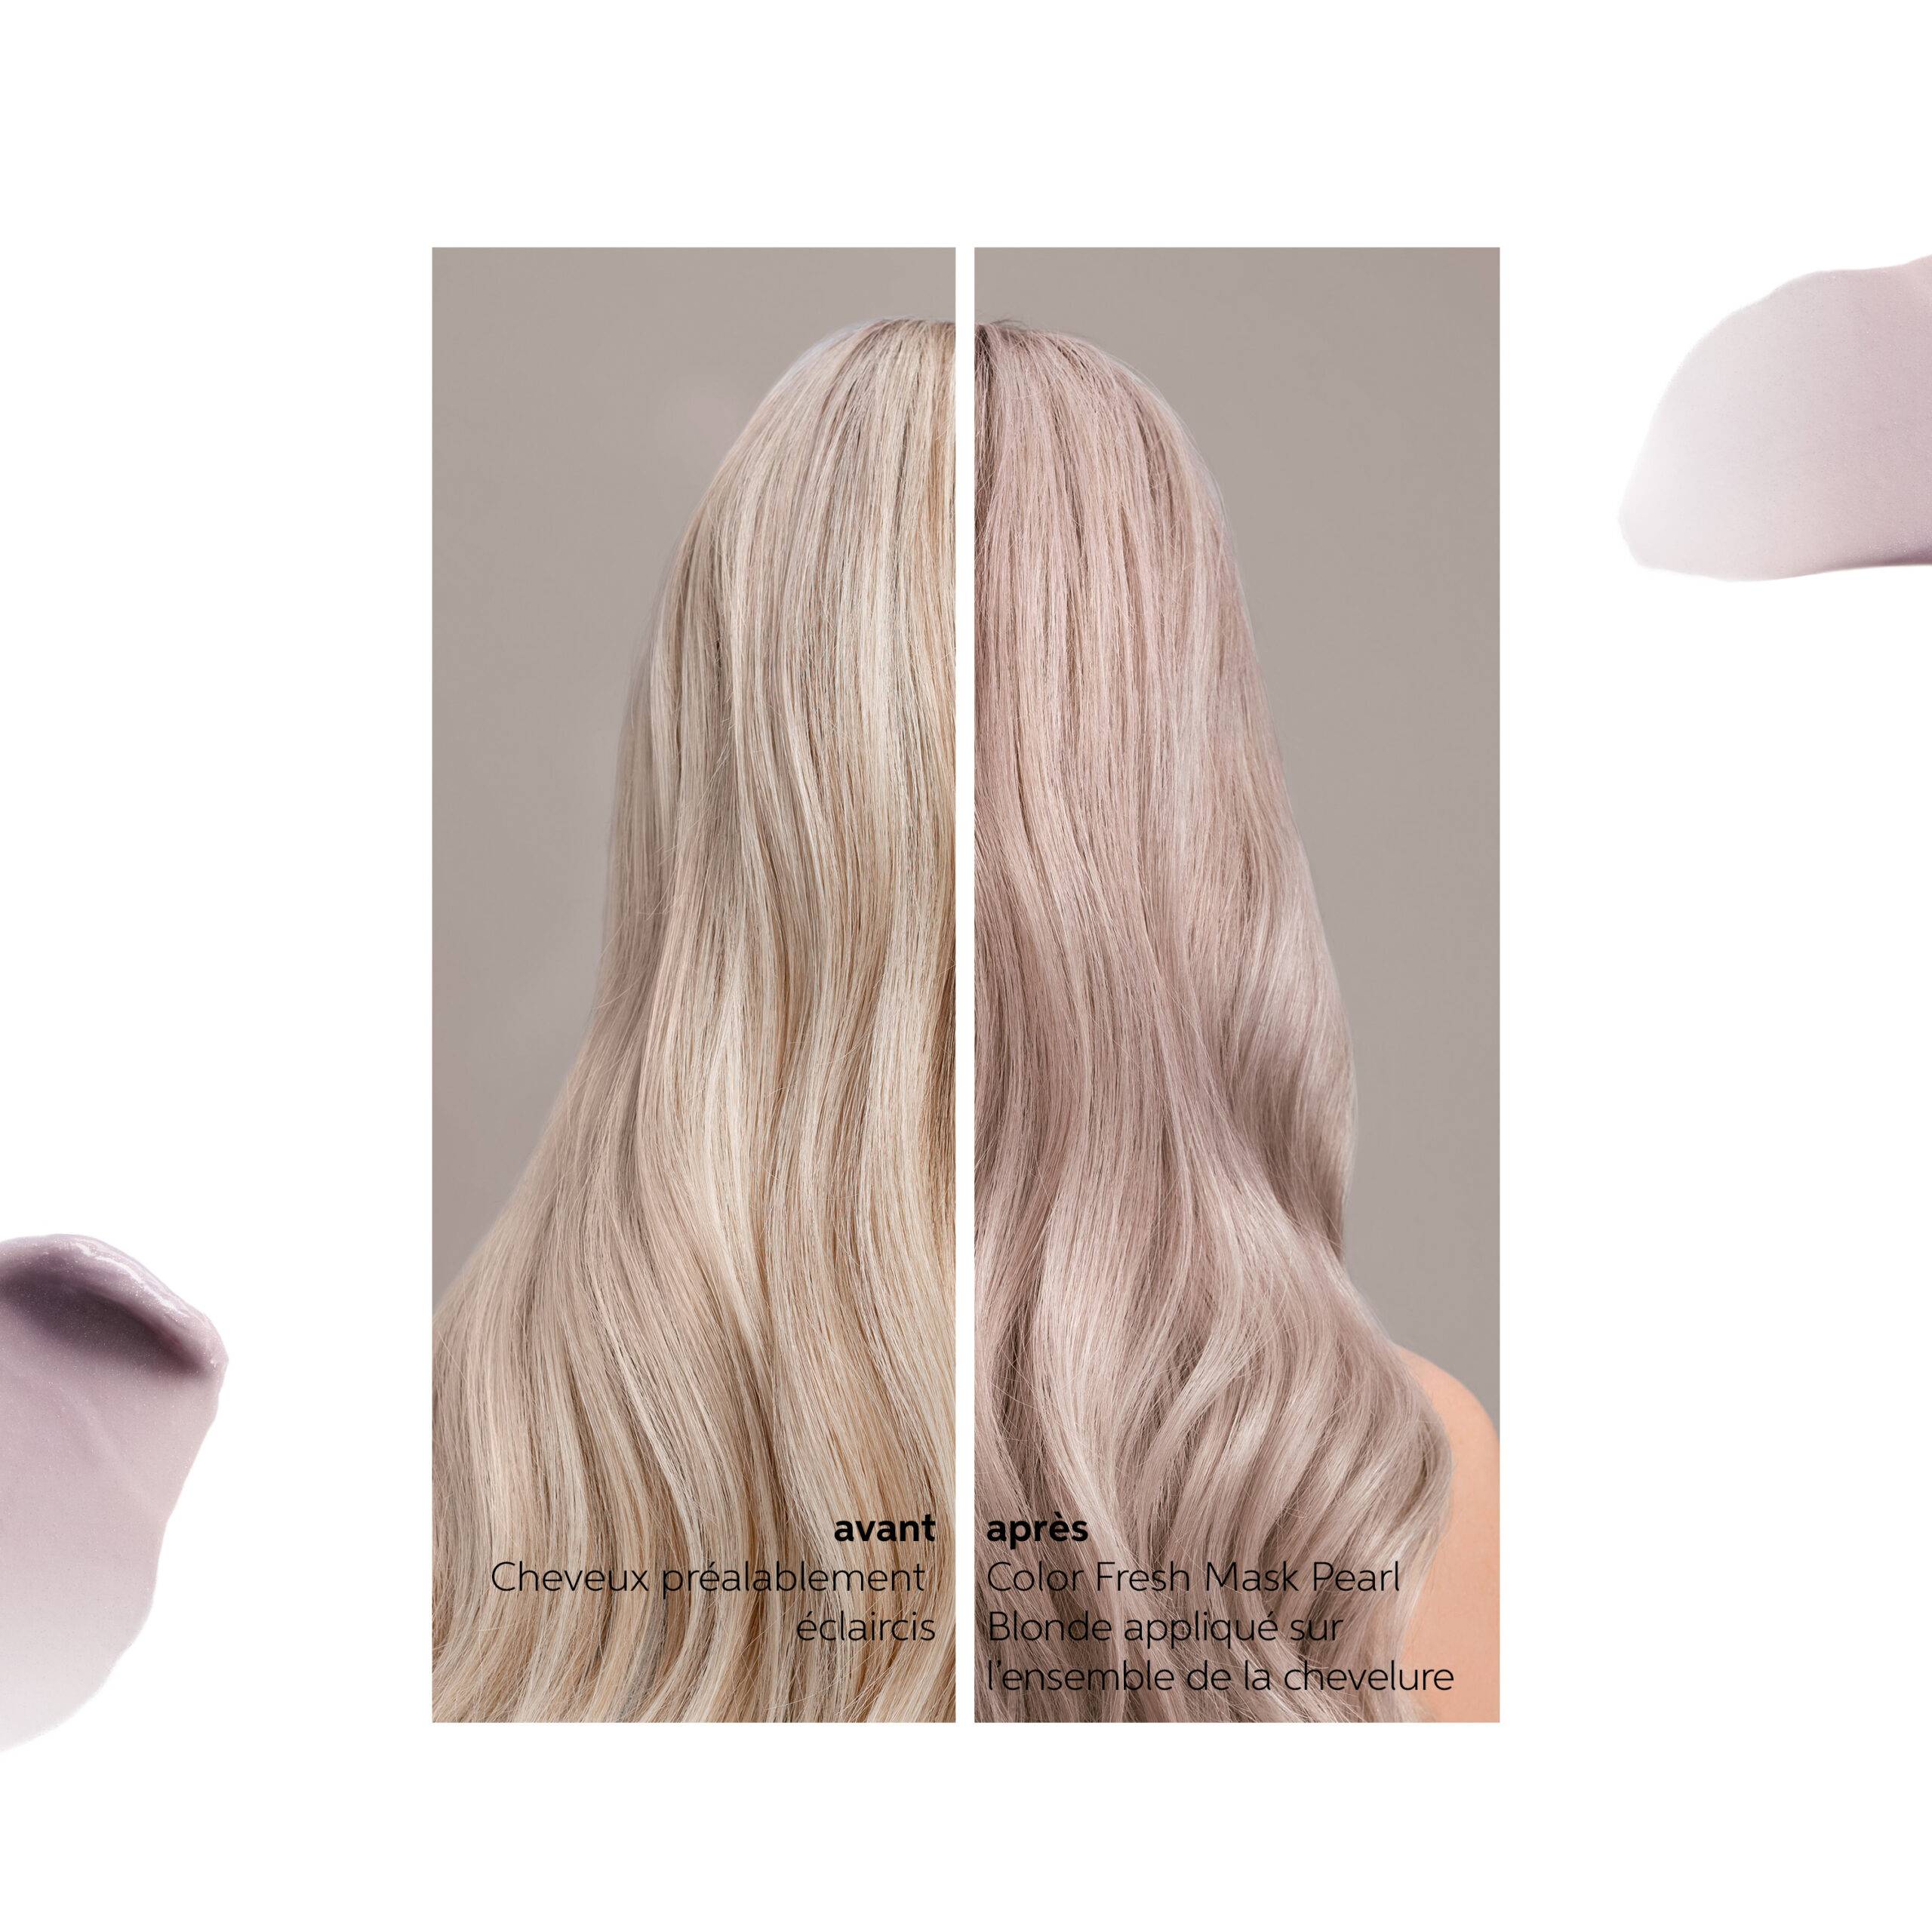 produit: Masque Coloration Temporaire Pearl Blonde - Color Fresh Mask